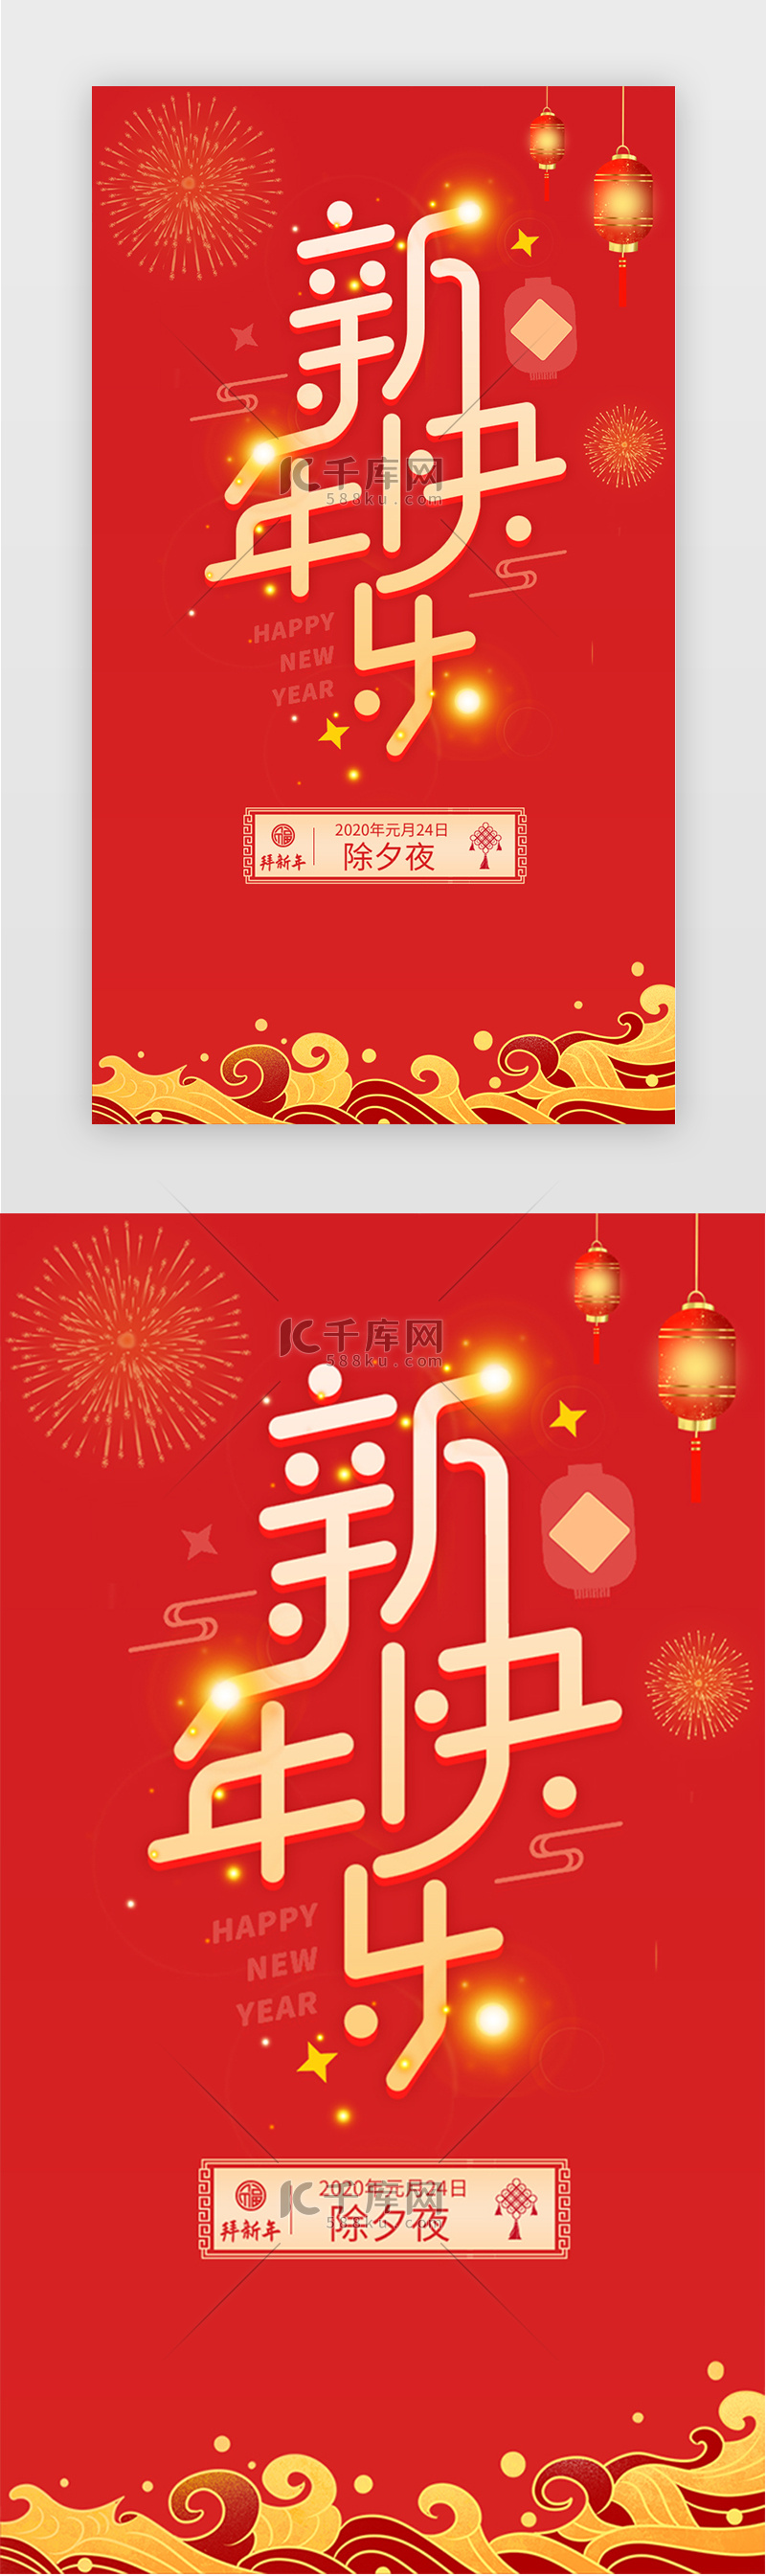 红色新年快乐除夕新年节日海报闪屏页